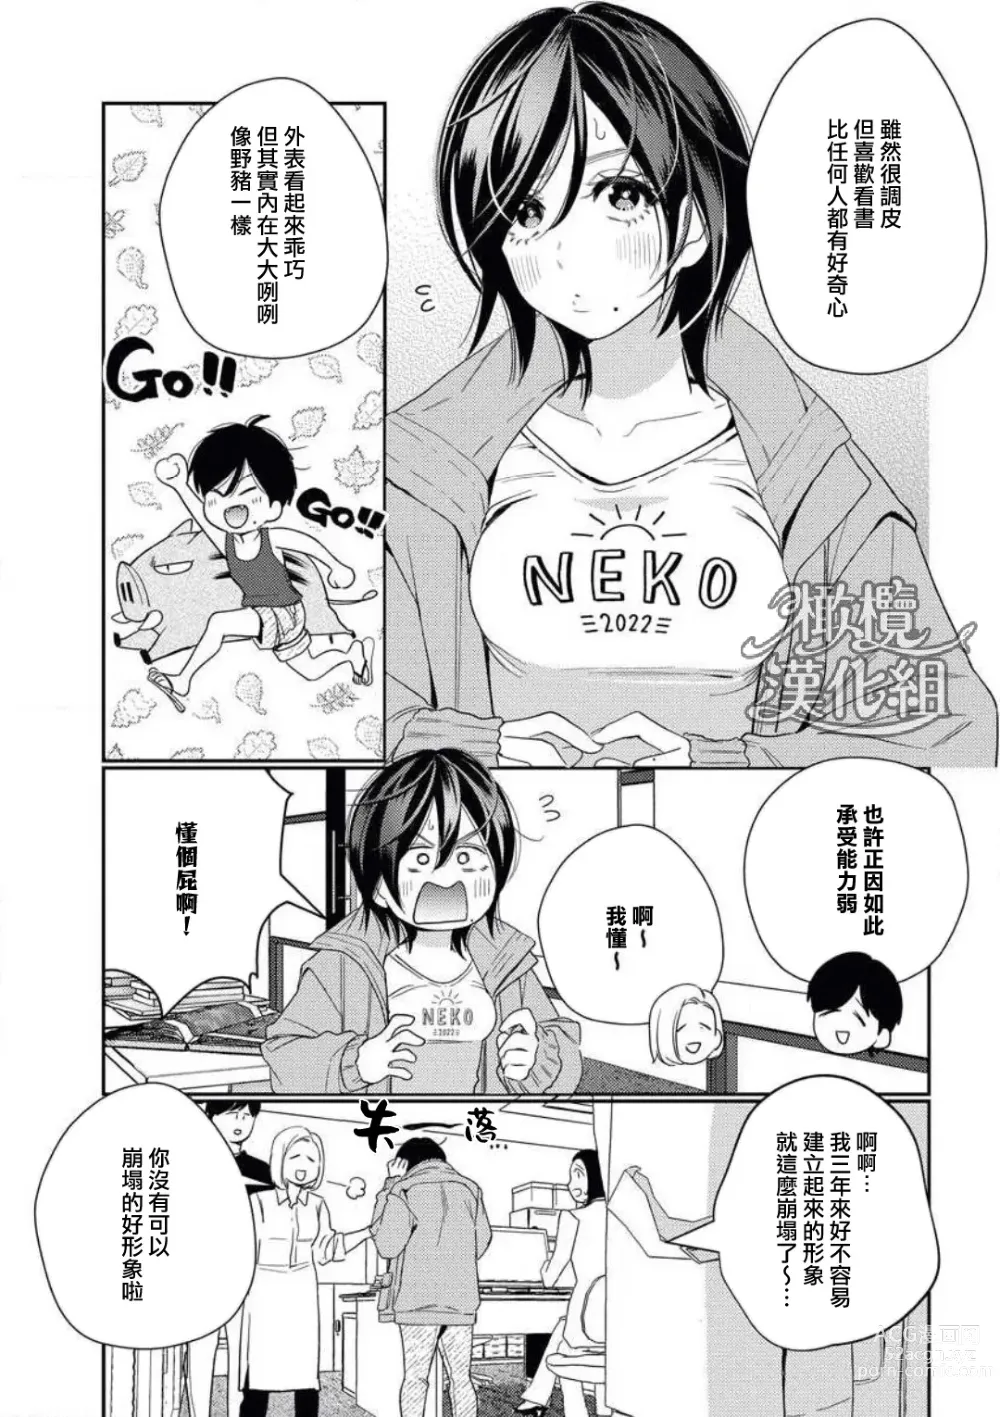 Page 5 of manga 青梅竹马难以攻陷被小黄话（※正当工作需求）玩弄一番